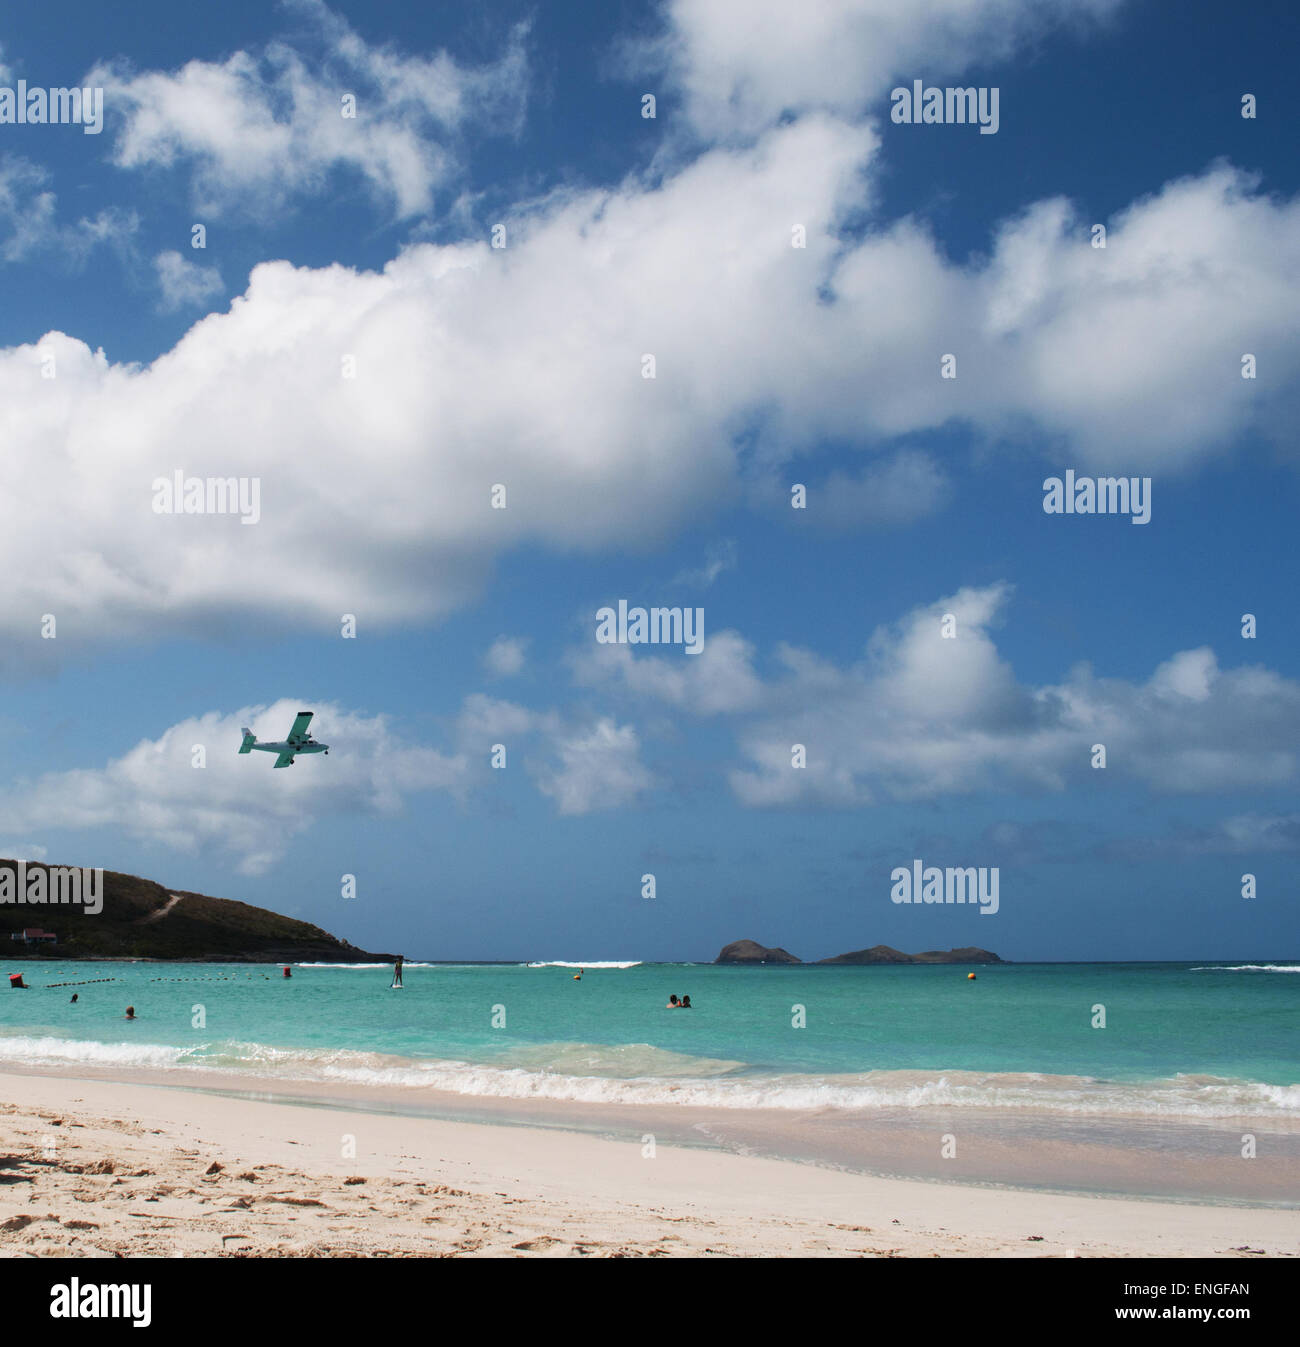 Saint-Barthélemy, Saint-barth, Caraïbes : un avion à l'atterrissage sur la piste de l'aéroport GUSTAF III vu de la plage (plage de Saint Jean de Saint Jean) Banque D'Images